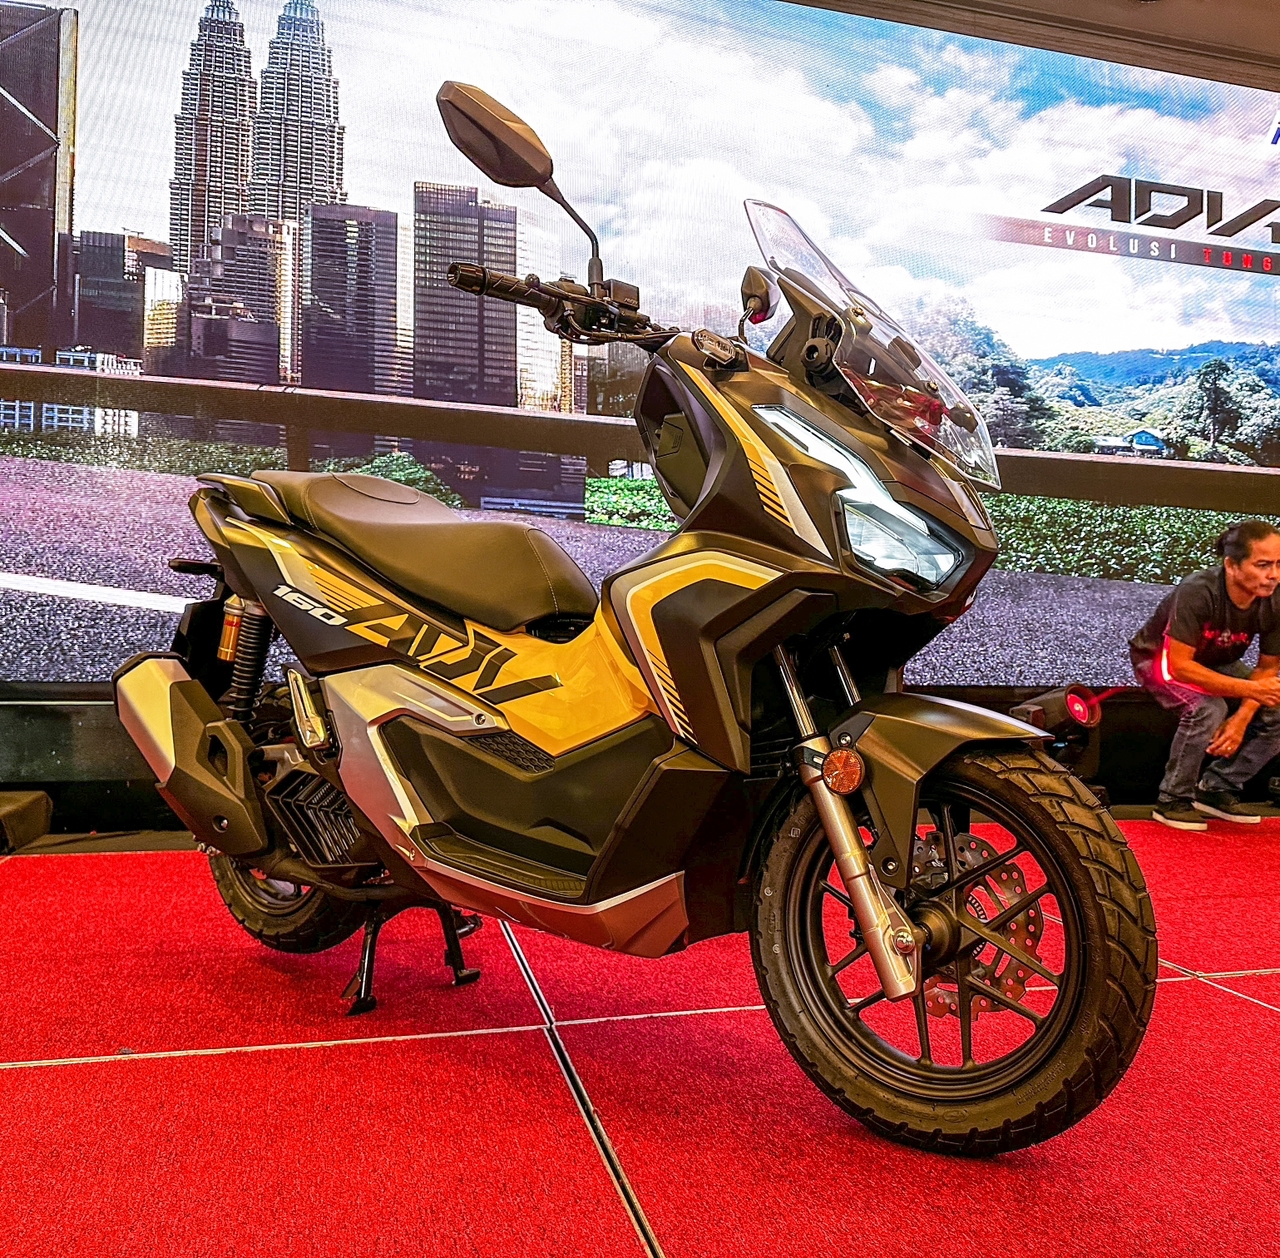 Honda ADV 160 rasmi di pasaran Malaysia, harga dari RM12,999 | Careta